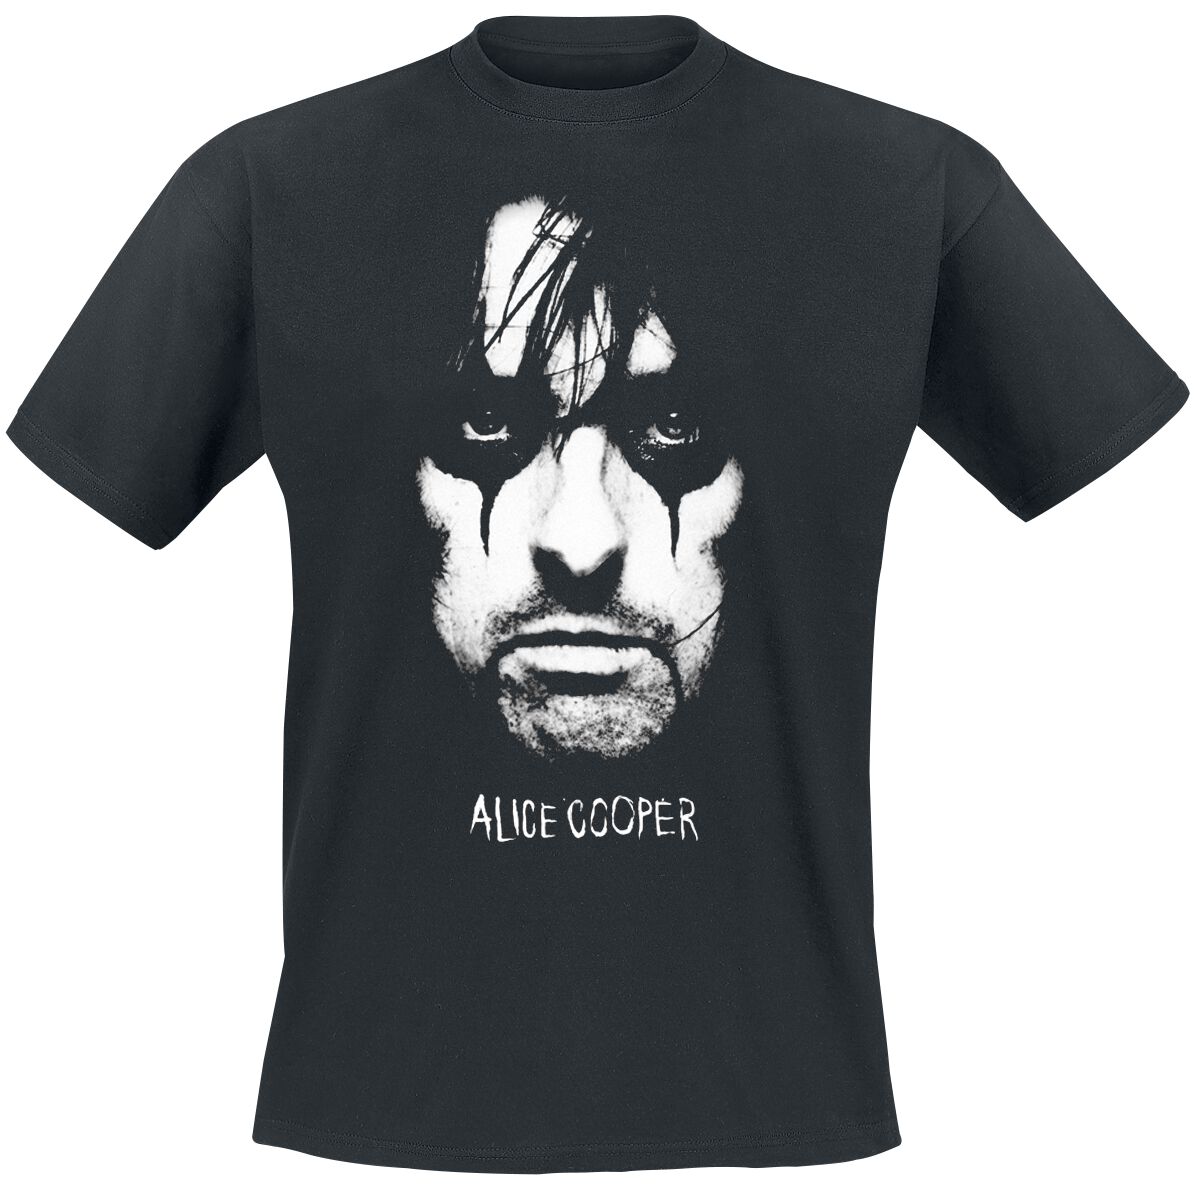 alice cooper t-shirt - portrait - s bis 4xl - fÃ¼r mÃ¤nner - grÃ¶ÃŸe xl - - lizenziertes merchandise! schwarz